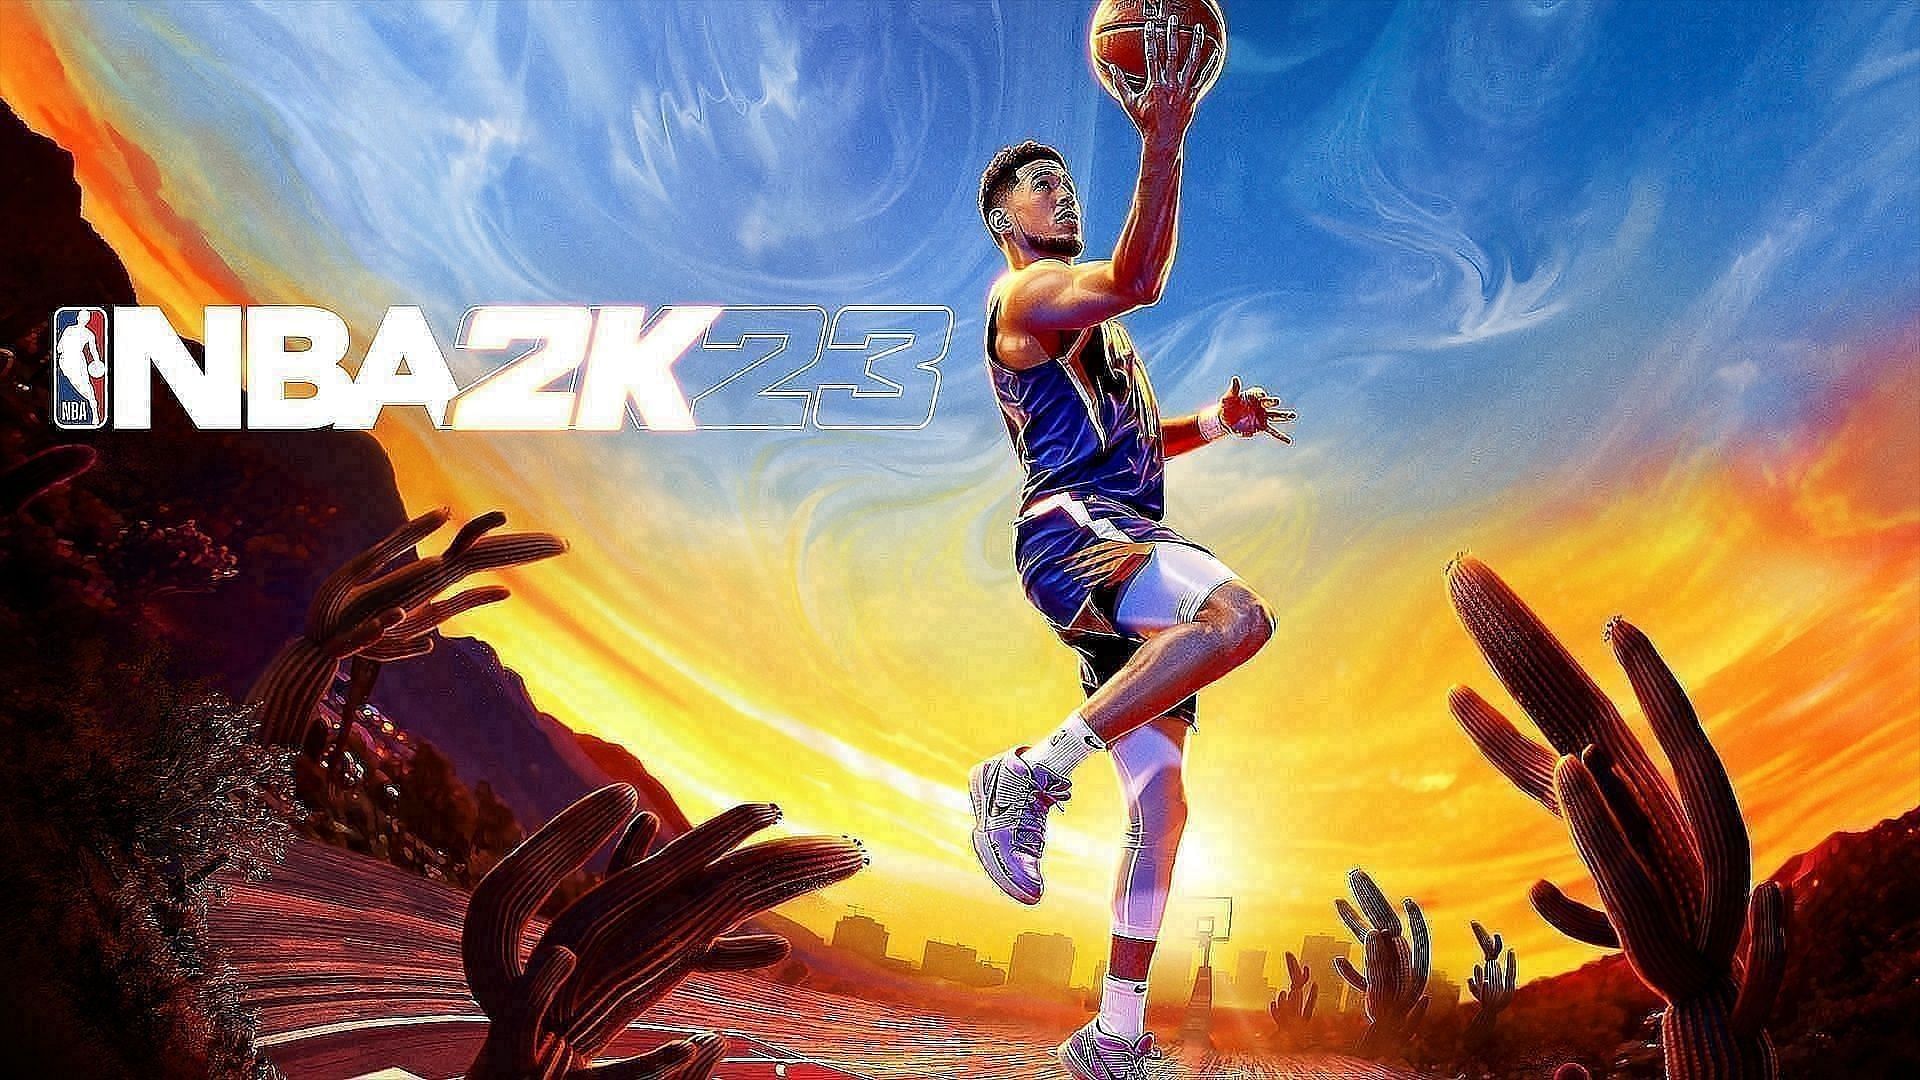 College basketball star makes NBA 2K debut on Friday - Polygon